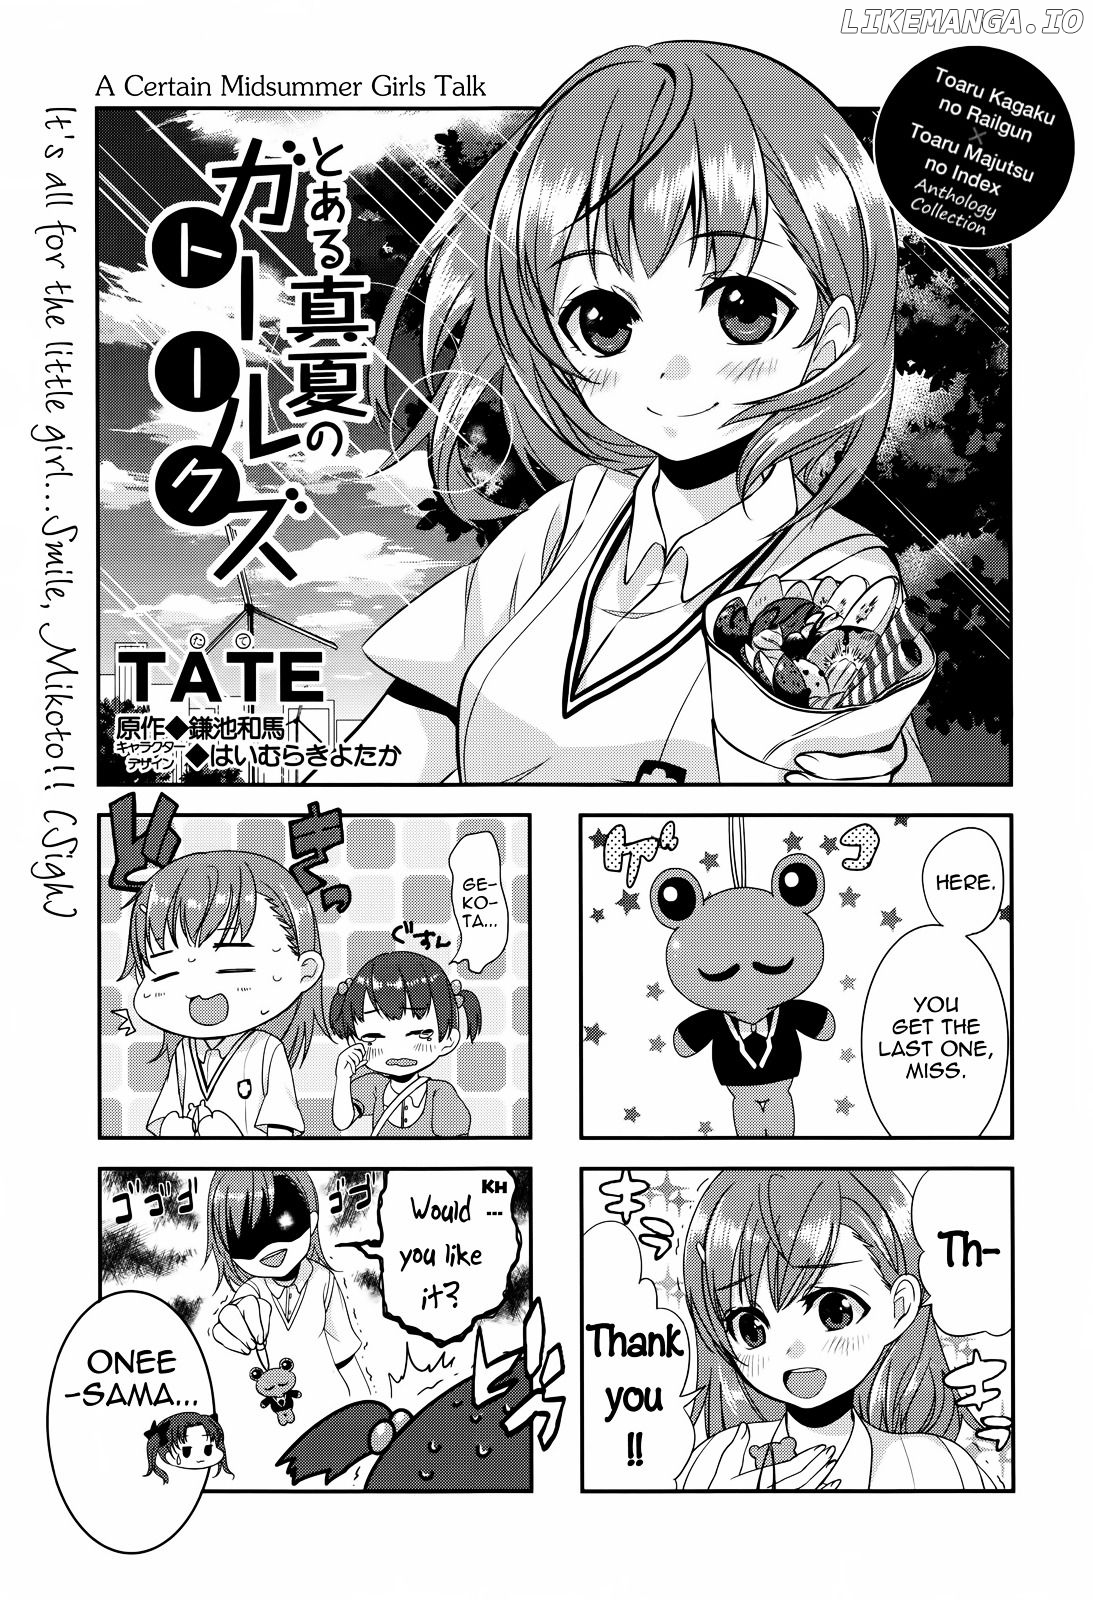 4-koma Koushiki Anthology - Toaru Kagaku no Railgun x Toaru Majutsu no Index chapter 28 - page 1